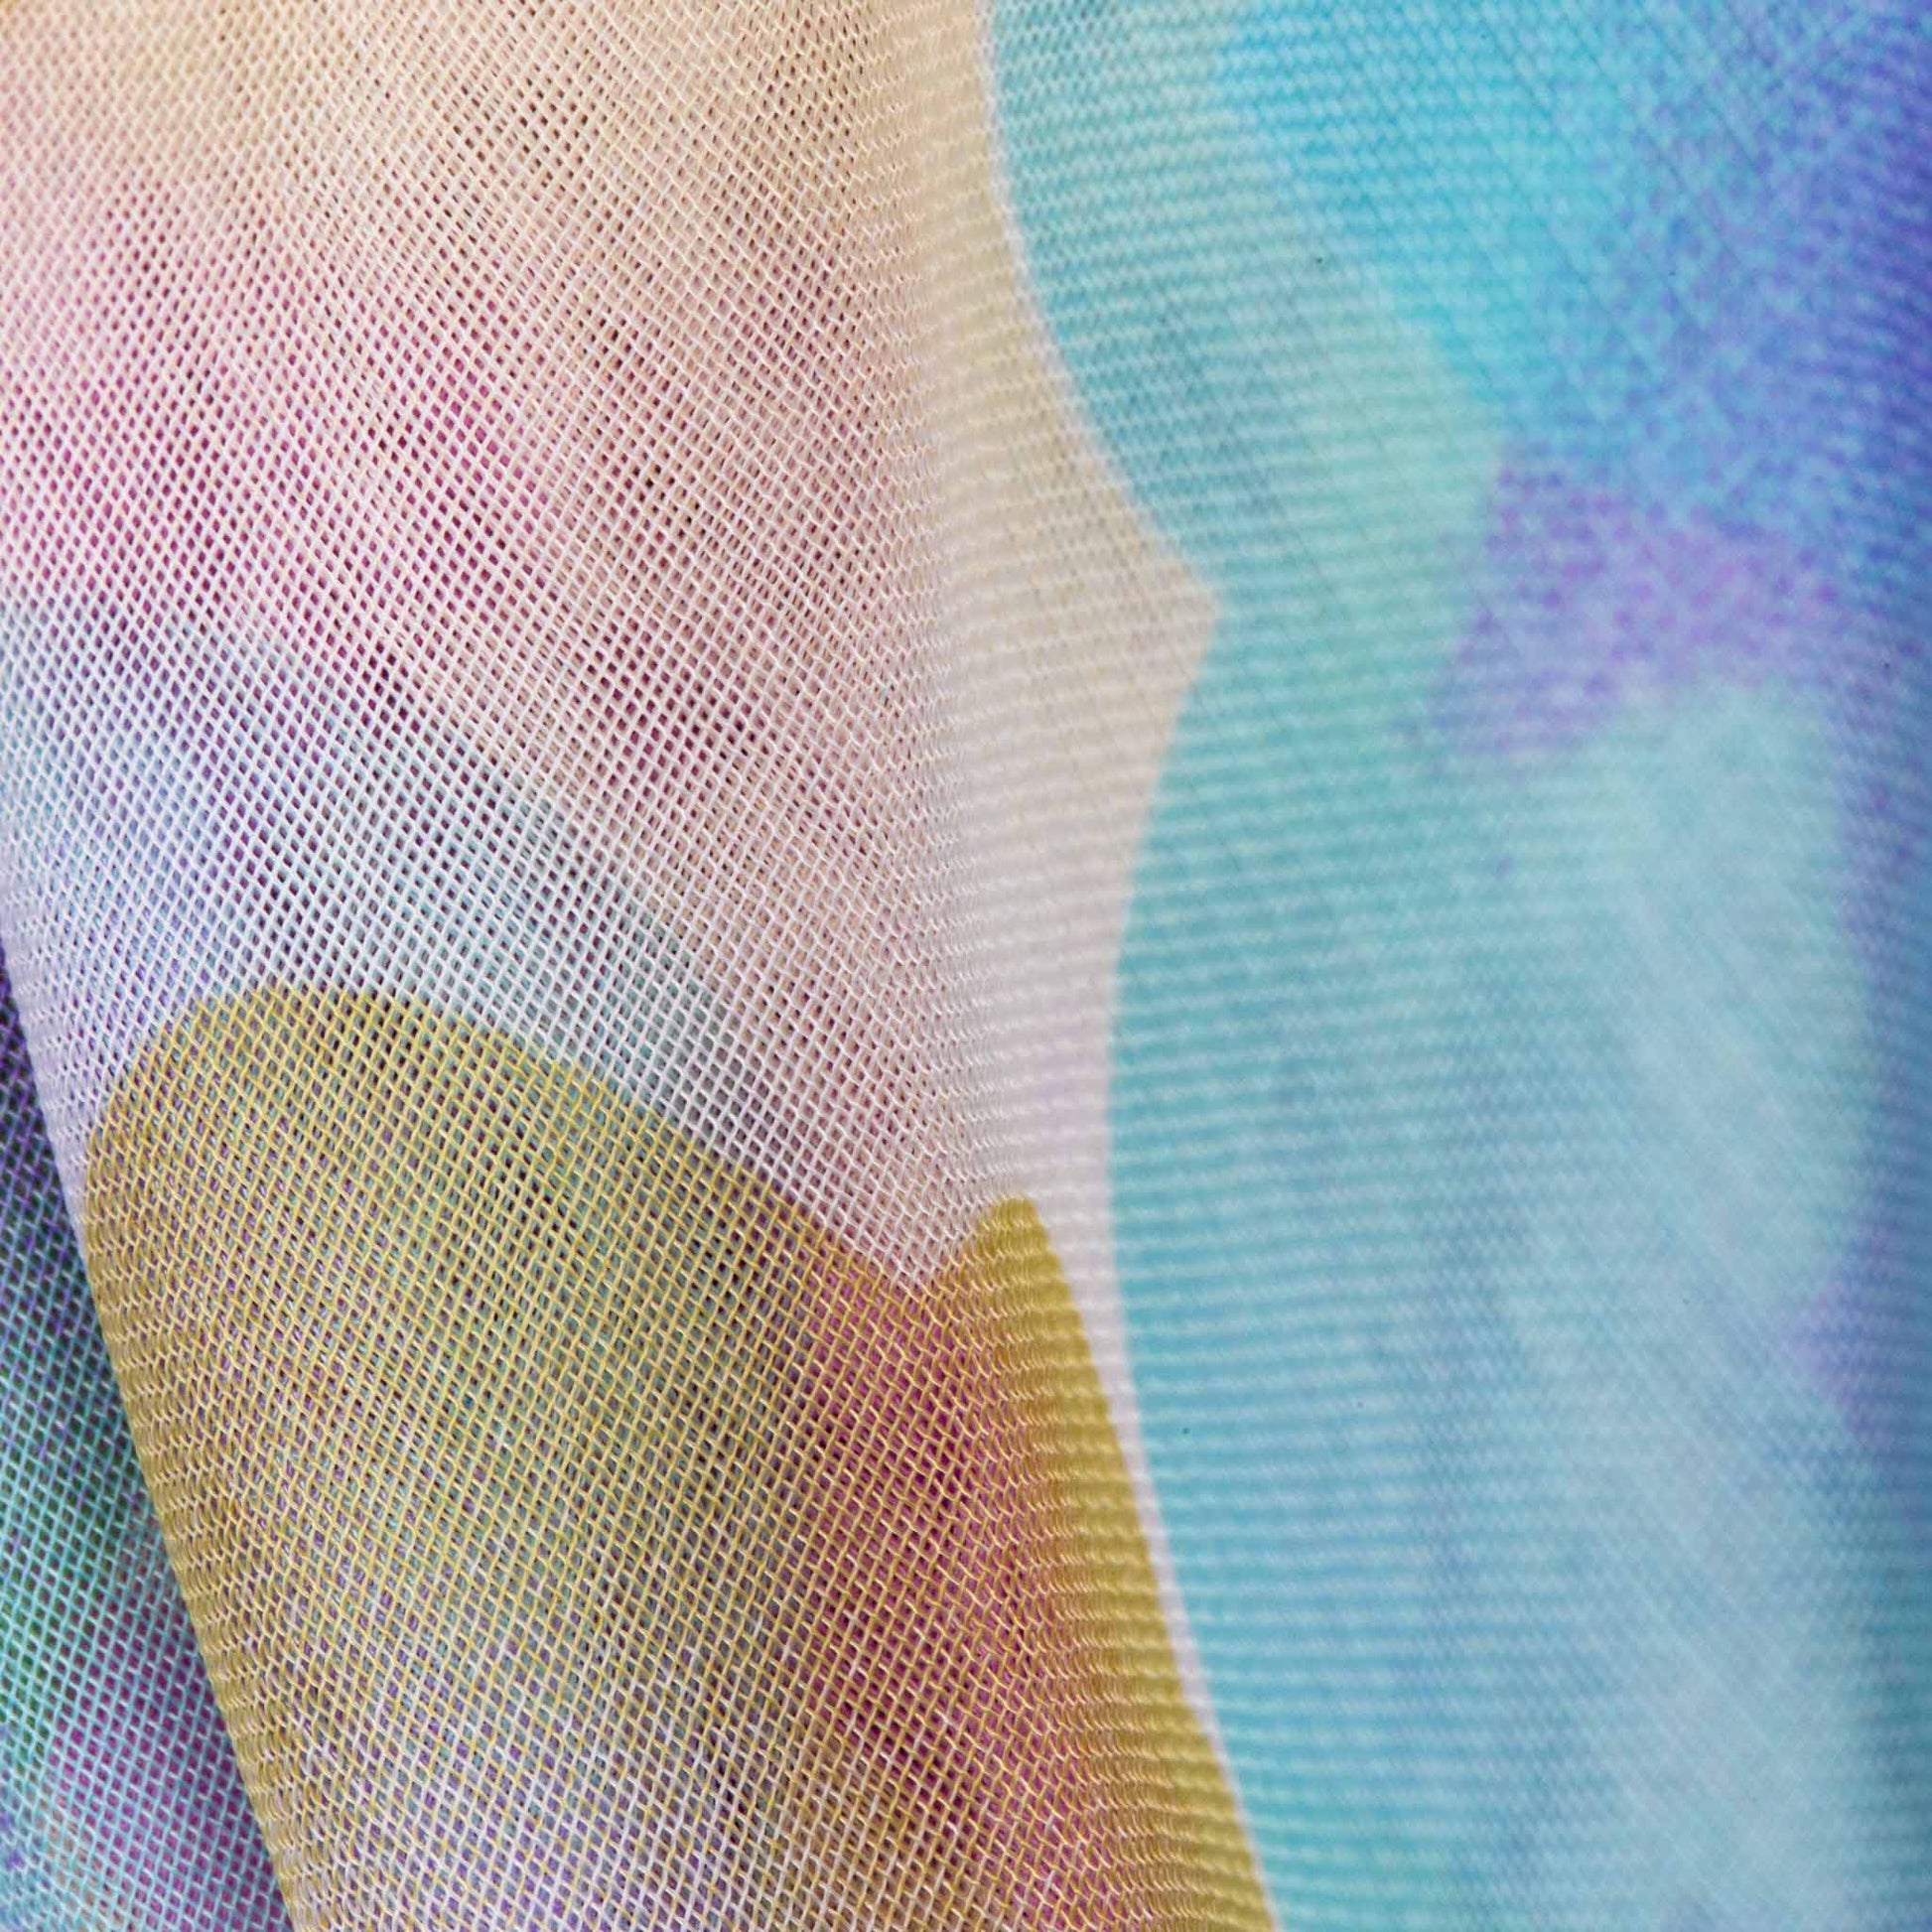 Eșarfă damă din mătase cu imprimeu floral , aspect pictat, 65 x 65 cm - Roz, Mov